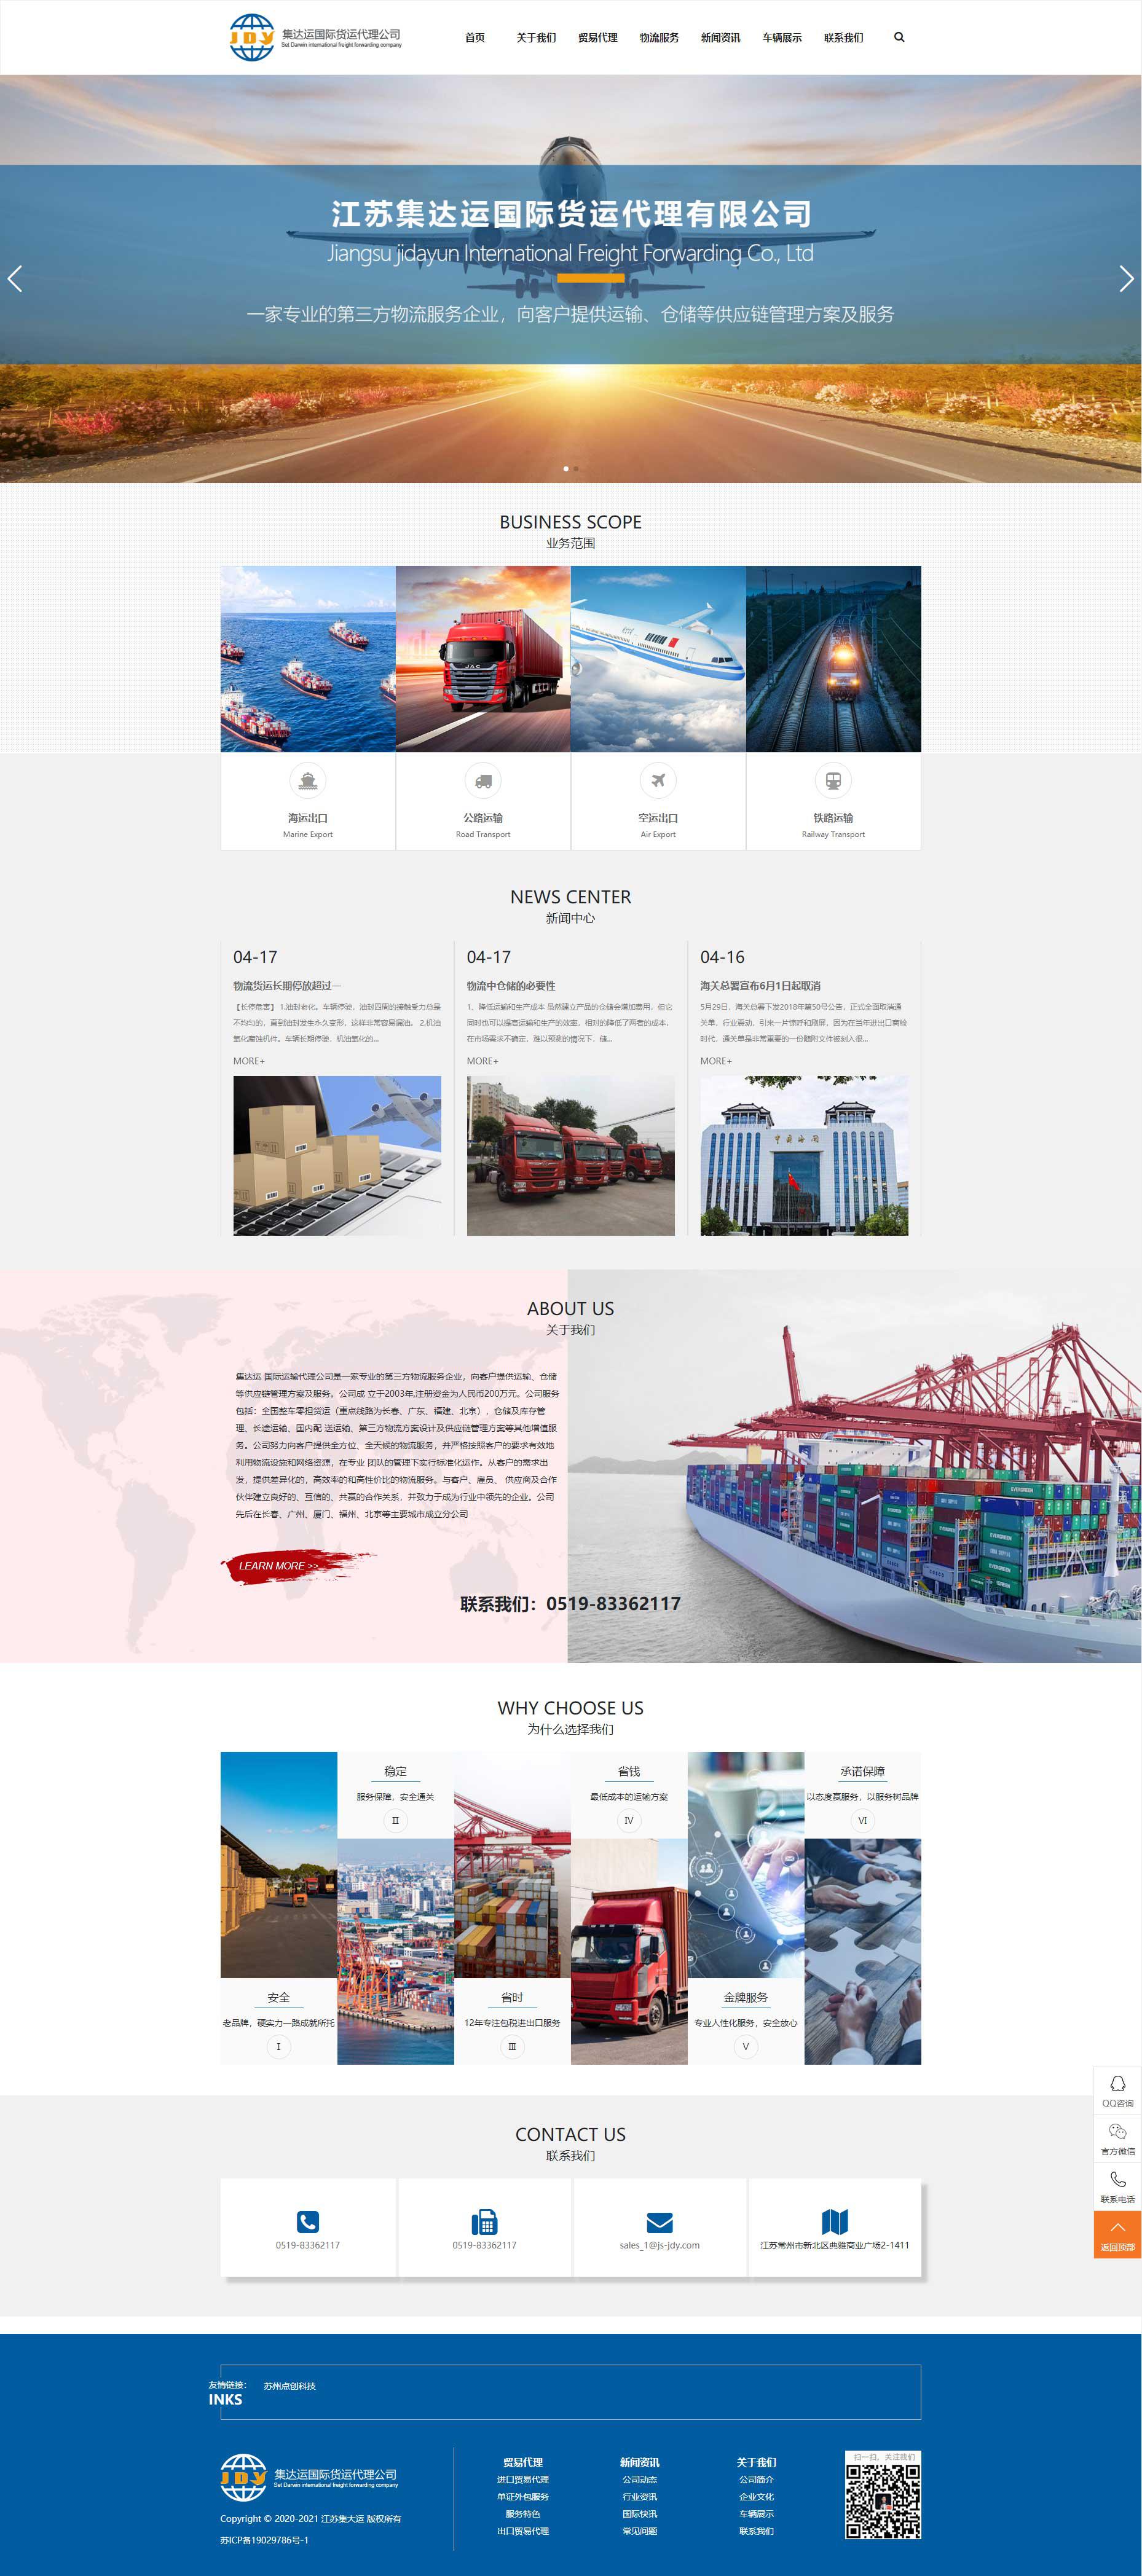 苏州网站建设公司点创科技为江苏集达运国际运输代理公司设计的首页